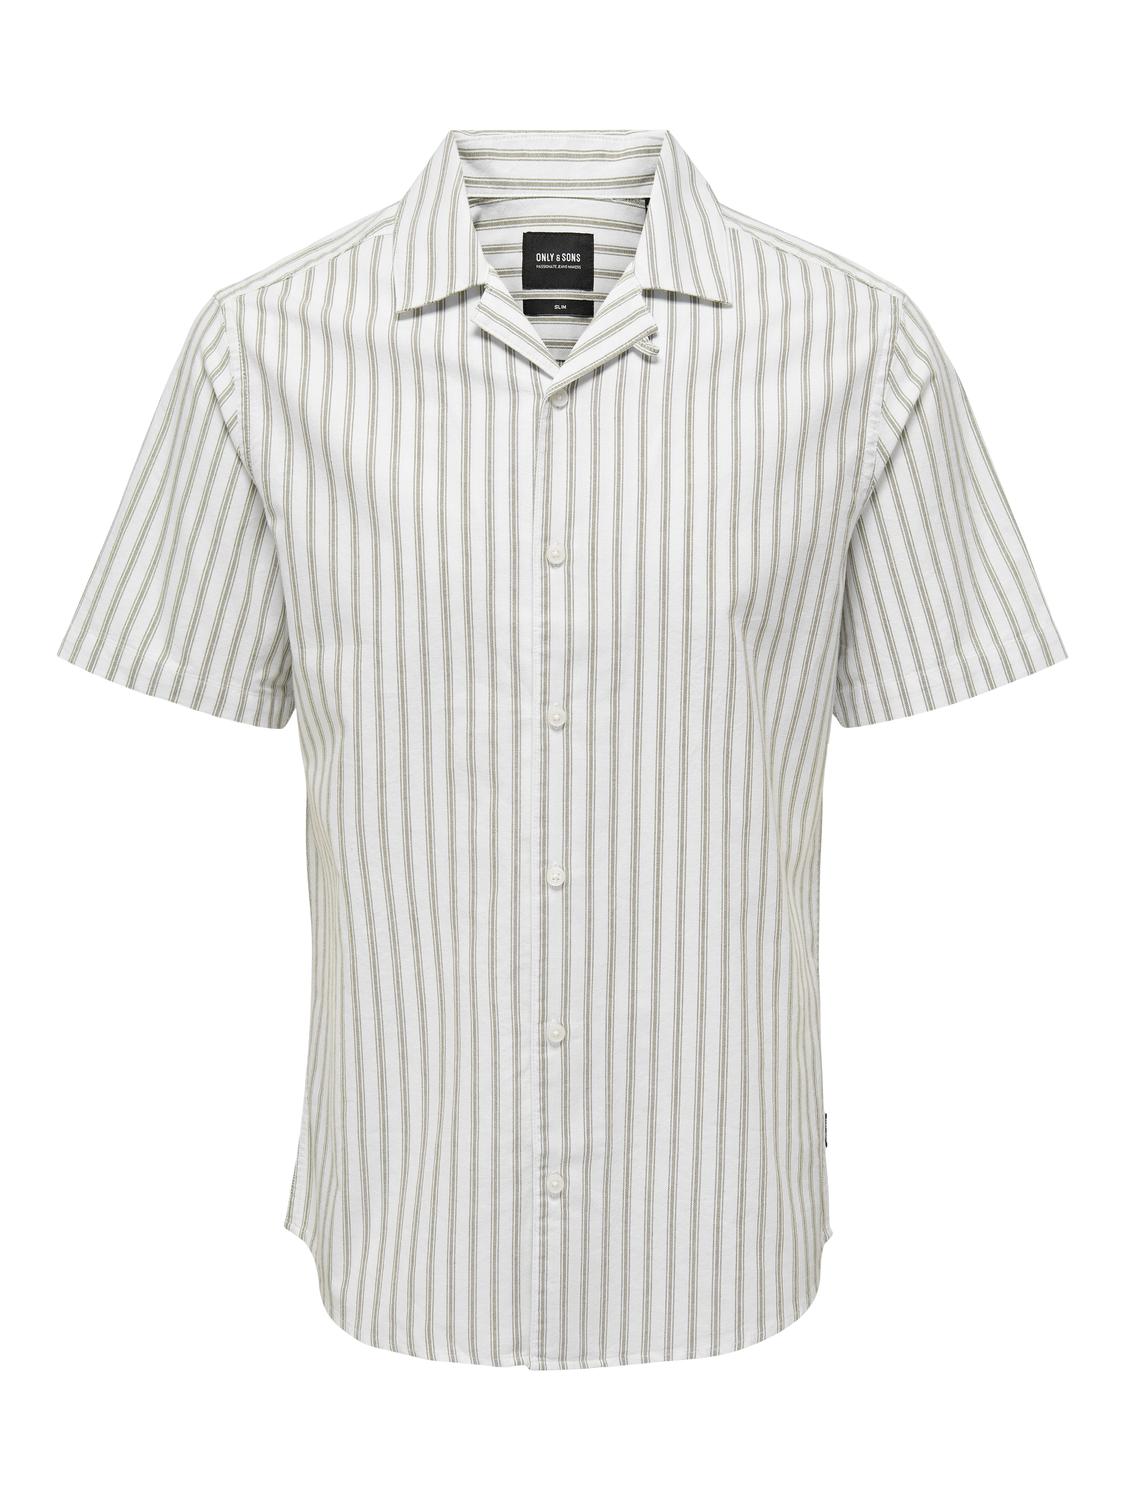 Marškiniai 'Alvaro' iš Only & Sons, spalva – alyvuogių spalva / balta, Prekių apžvalga